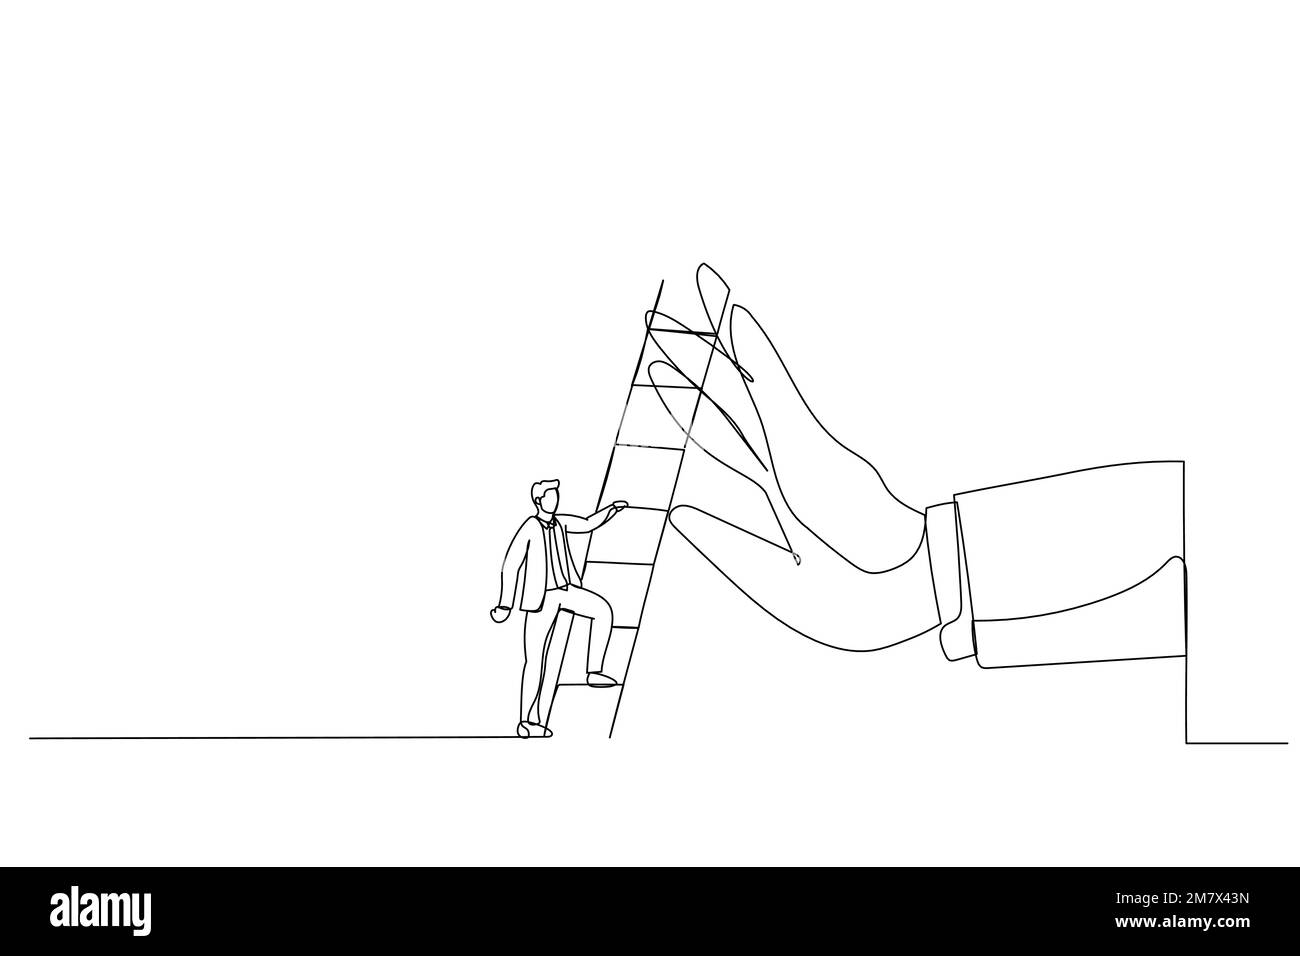 Illustrazione di un uomo d'affari ambizioso in procinto di salire la scala per superare la mano gigante che lo ferma. Metafora per superare ostacolo di affari, barriera o Illustrazione Vettoriale